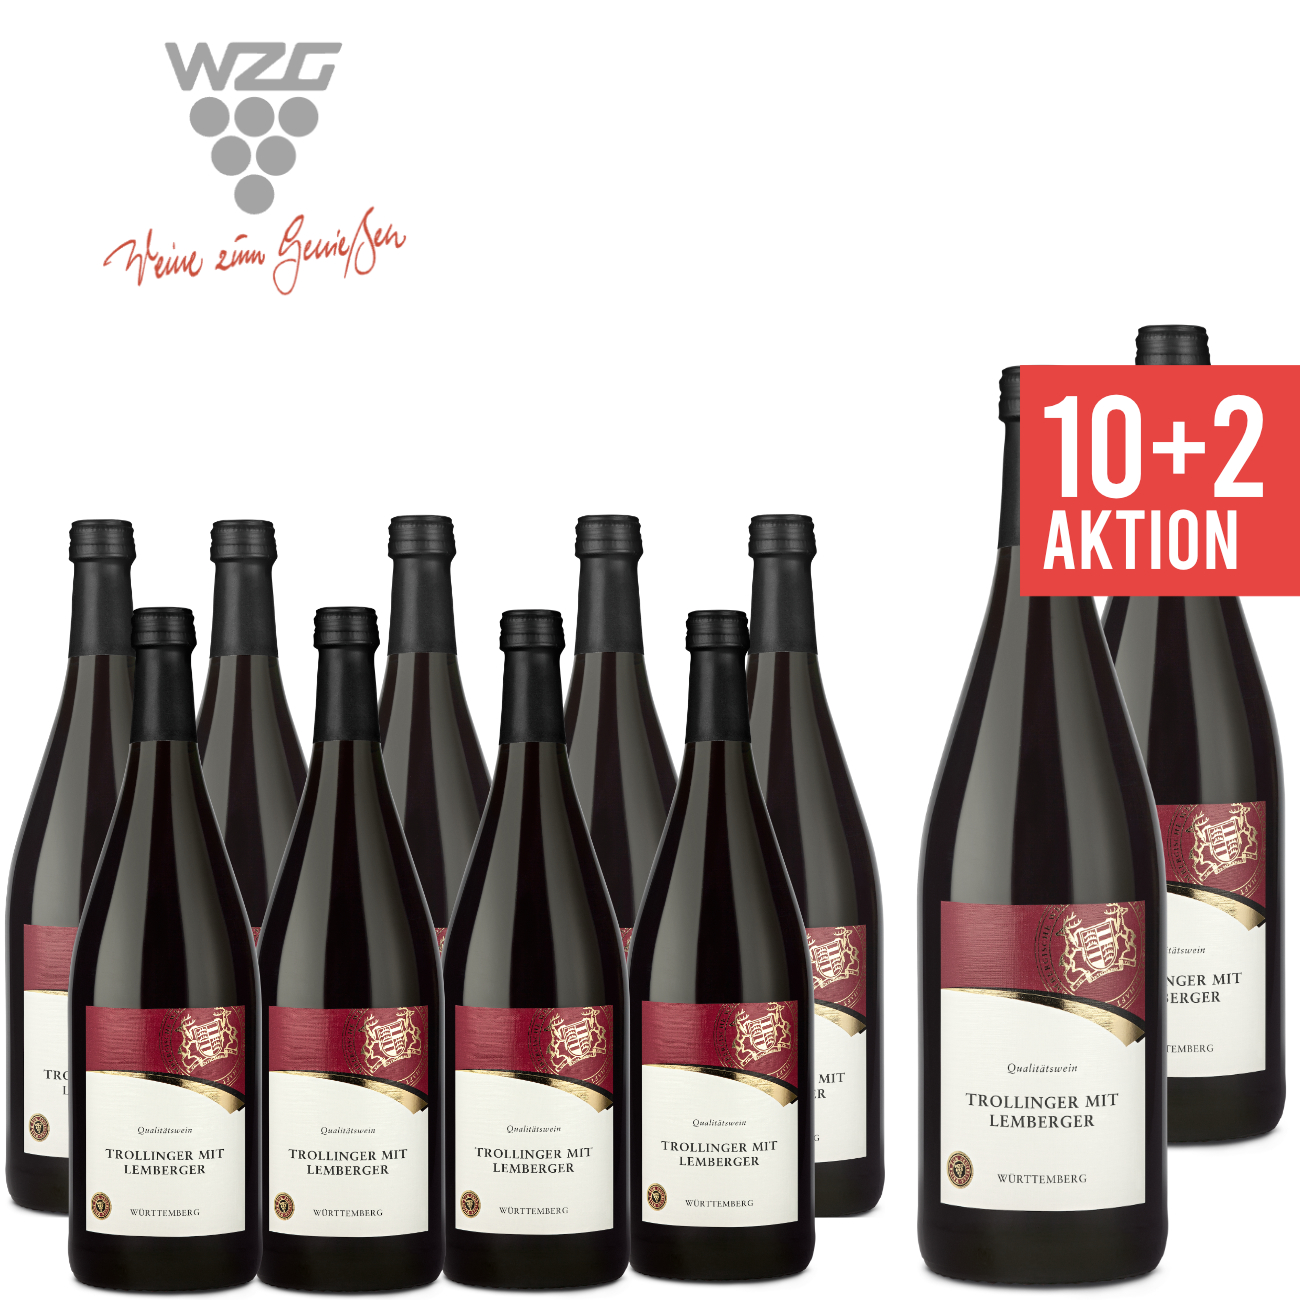 WZG Möglingen Trollinger mit Lemberger Württemberg 1,0 L - Qualitätswein, Rotwein, halbtrocken, Literflasche, 1-Liter, Württemberger Wein